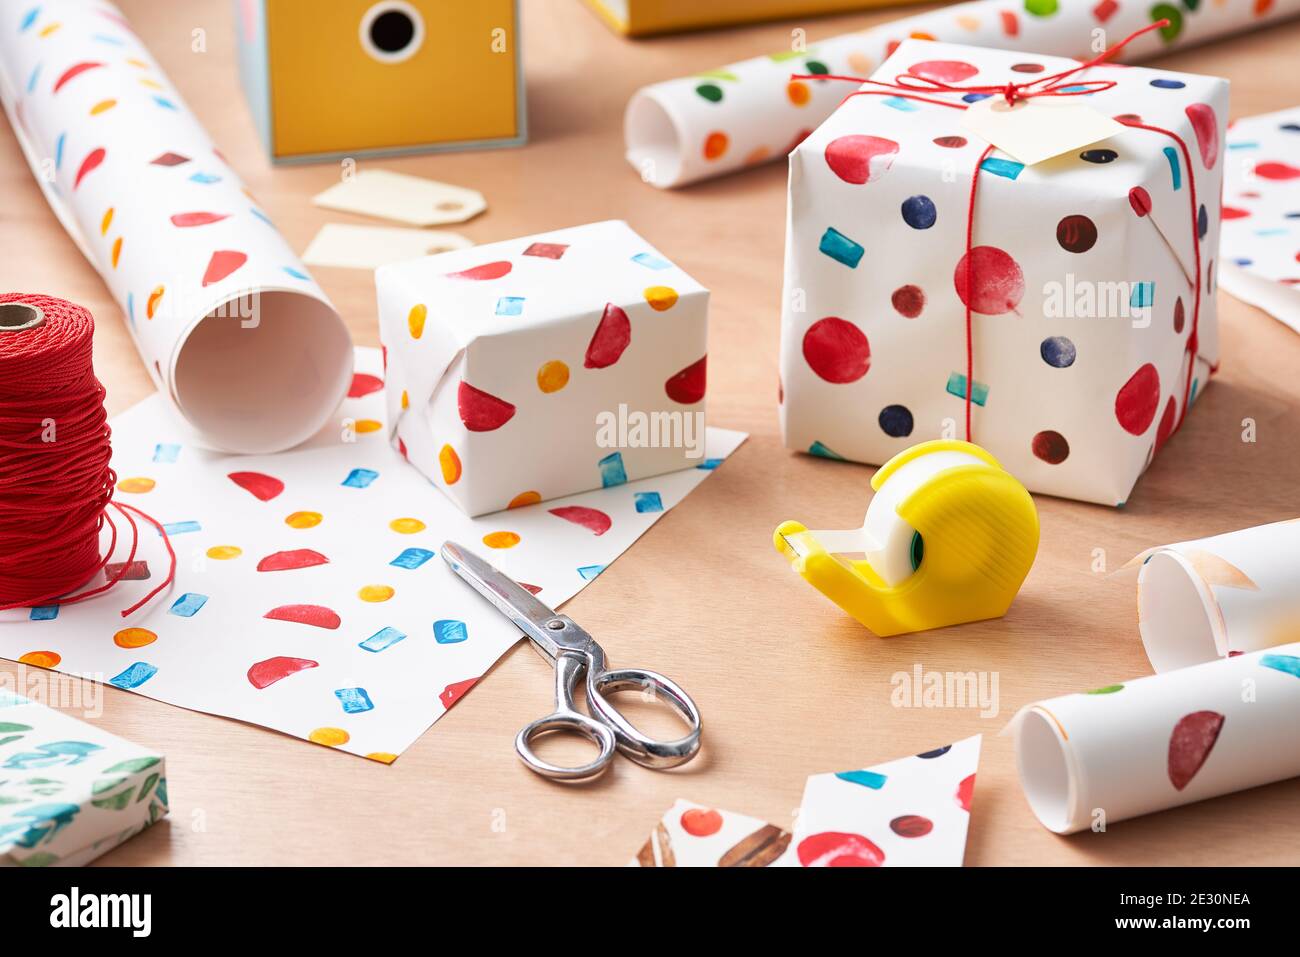 Forbici e nastro adesivo posizionati sul tavolo vicino alle confezioni regalo con un rivestimento creativo fatto a mano Foto Stock